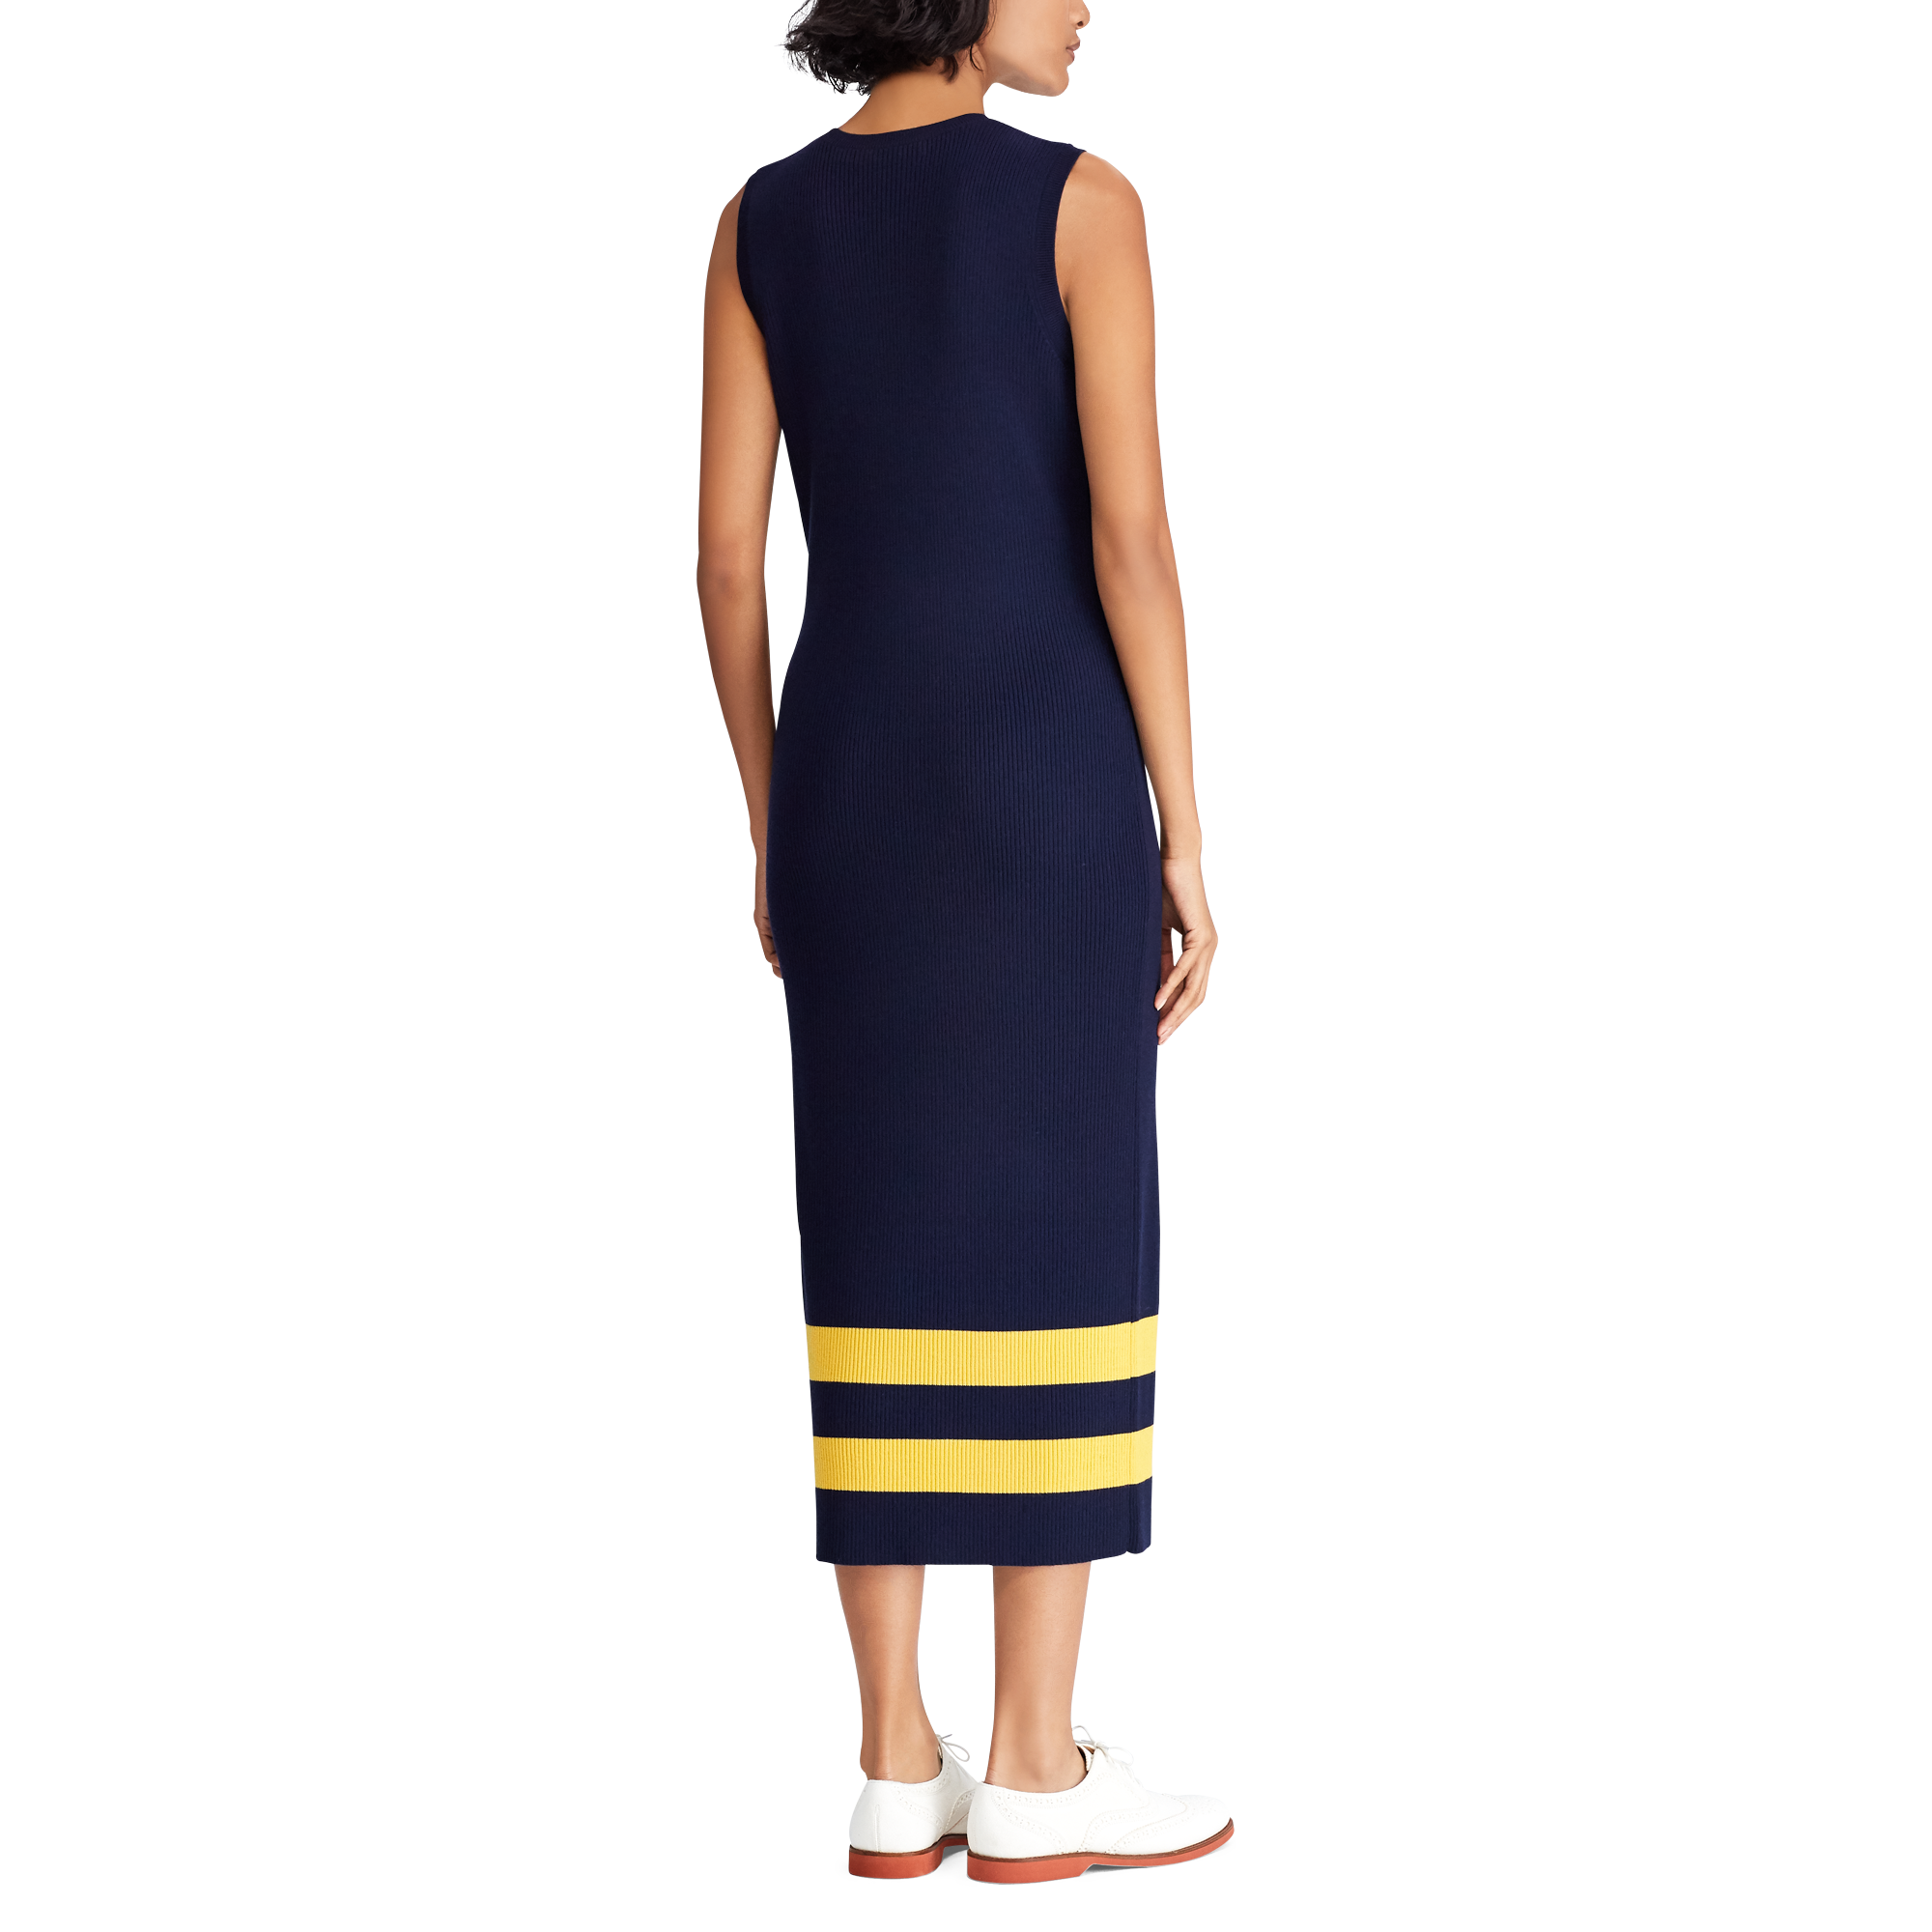 Ralph Lauren Striped Wool Sleeveless Dress. 4